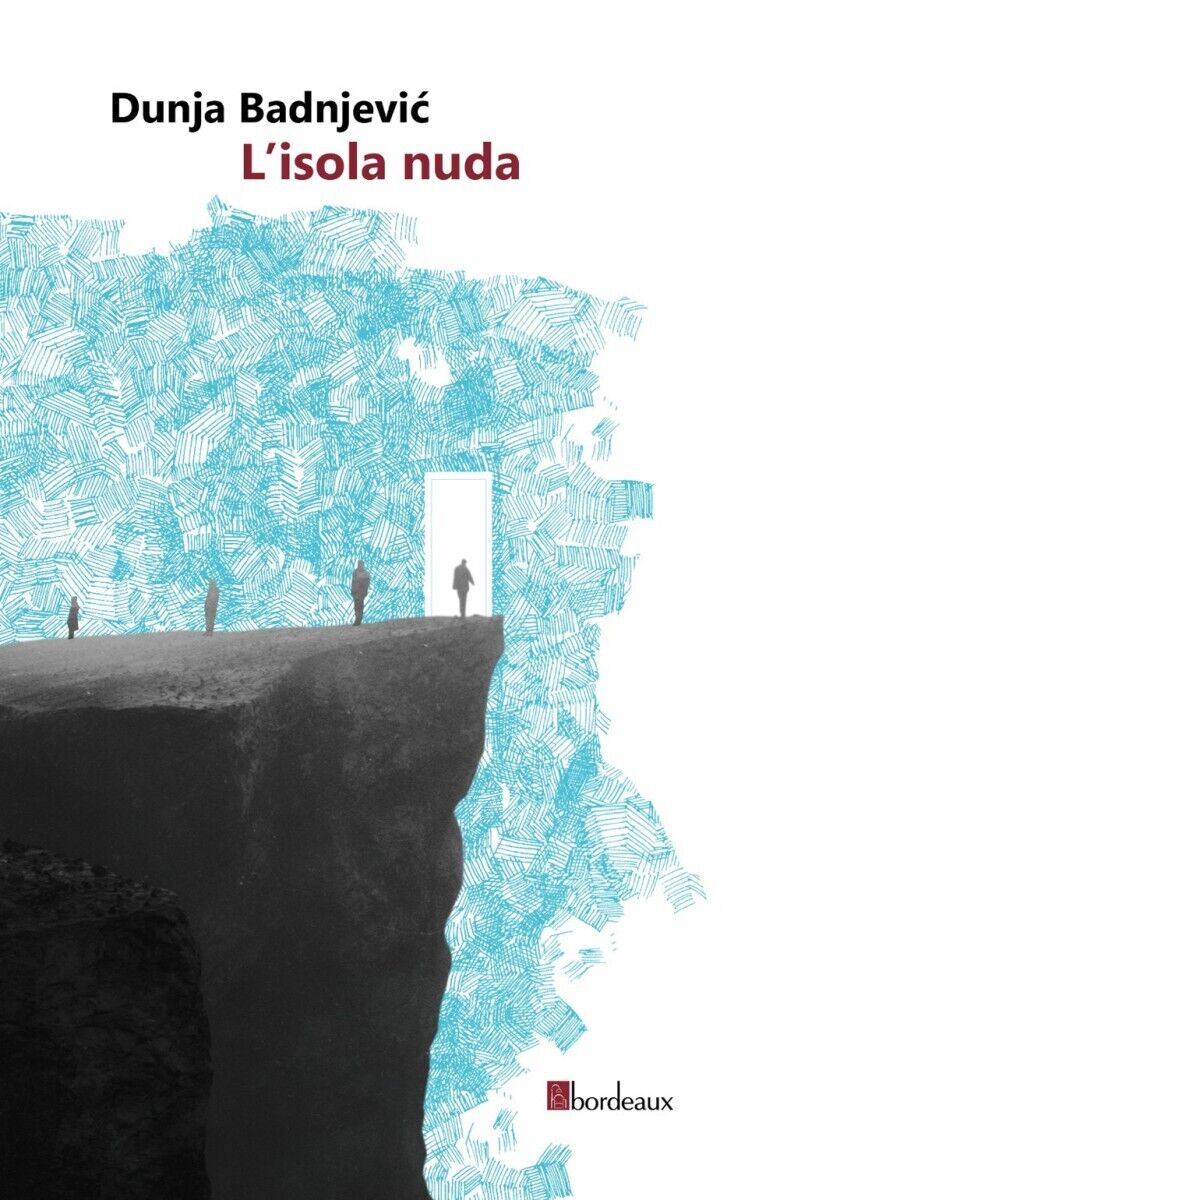 L'isola nuda di Dunja Badnjevic, 2020, Bordeaux libro usato